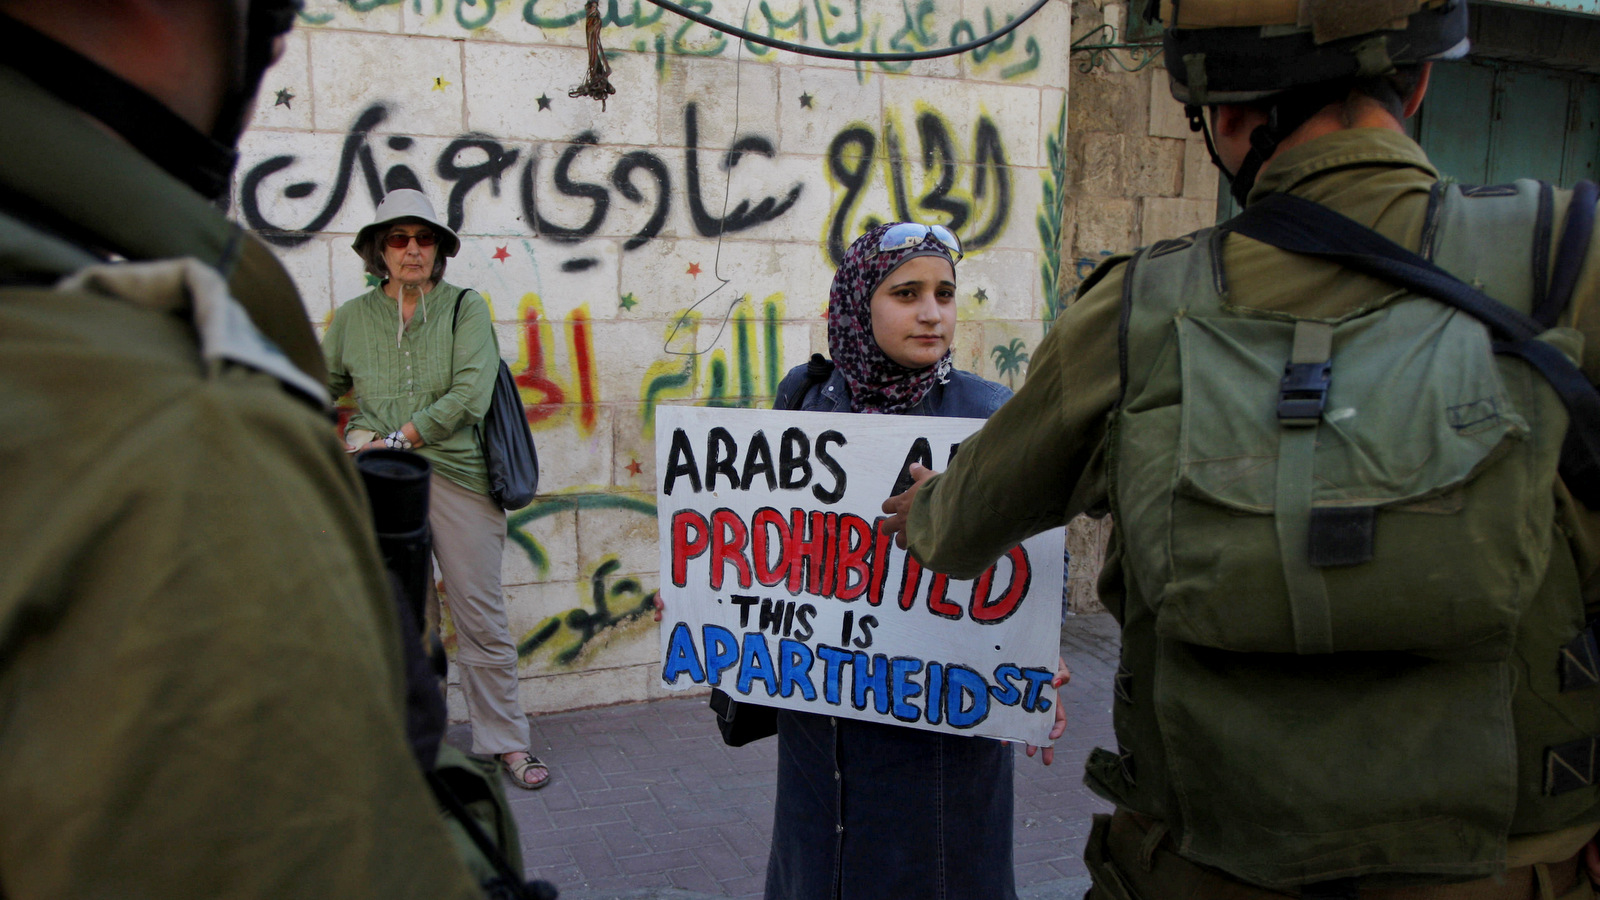 Los soldados israelíes se enfrentan a activistas del grupo Juventud Contra los Asentamientos durante una manifestación contra el cierre de la calle al-Shuhada en Hebrón, el 14 de septiembre de 2011. El graffiti árabe en la pared dice: "Hajj Shadi Arafat". (AP / Nasser Shiyoukhi)